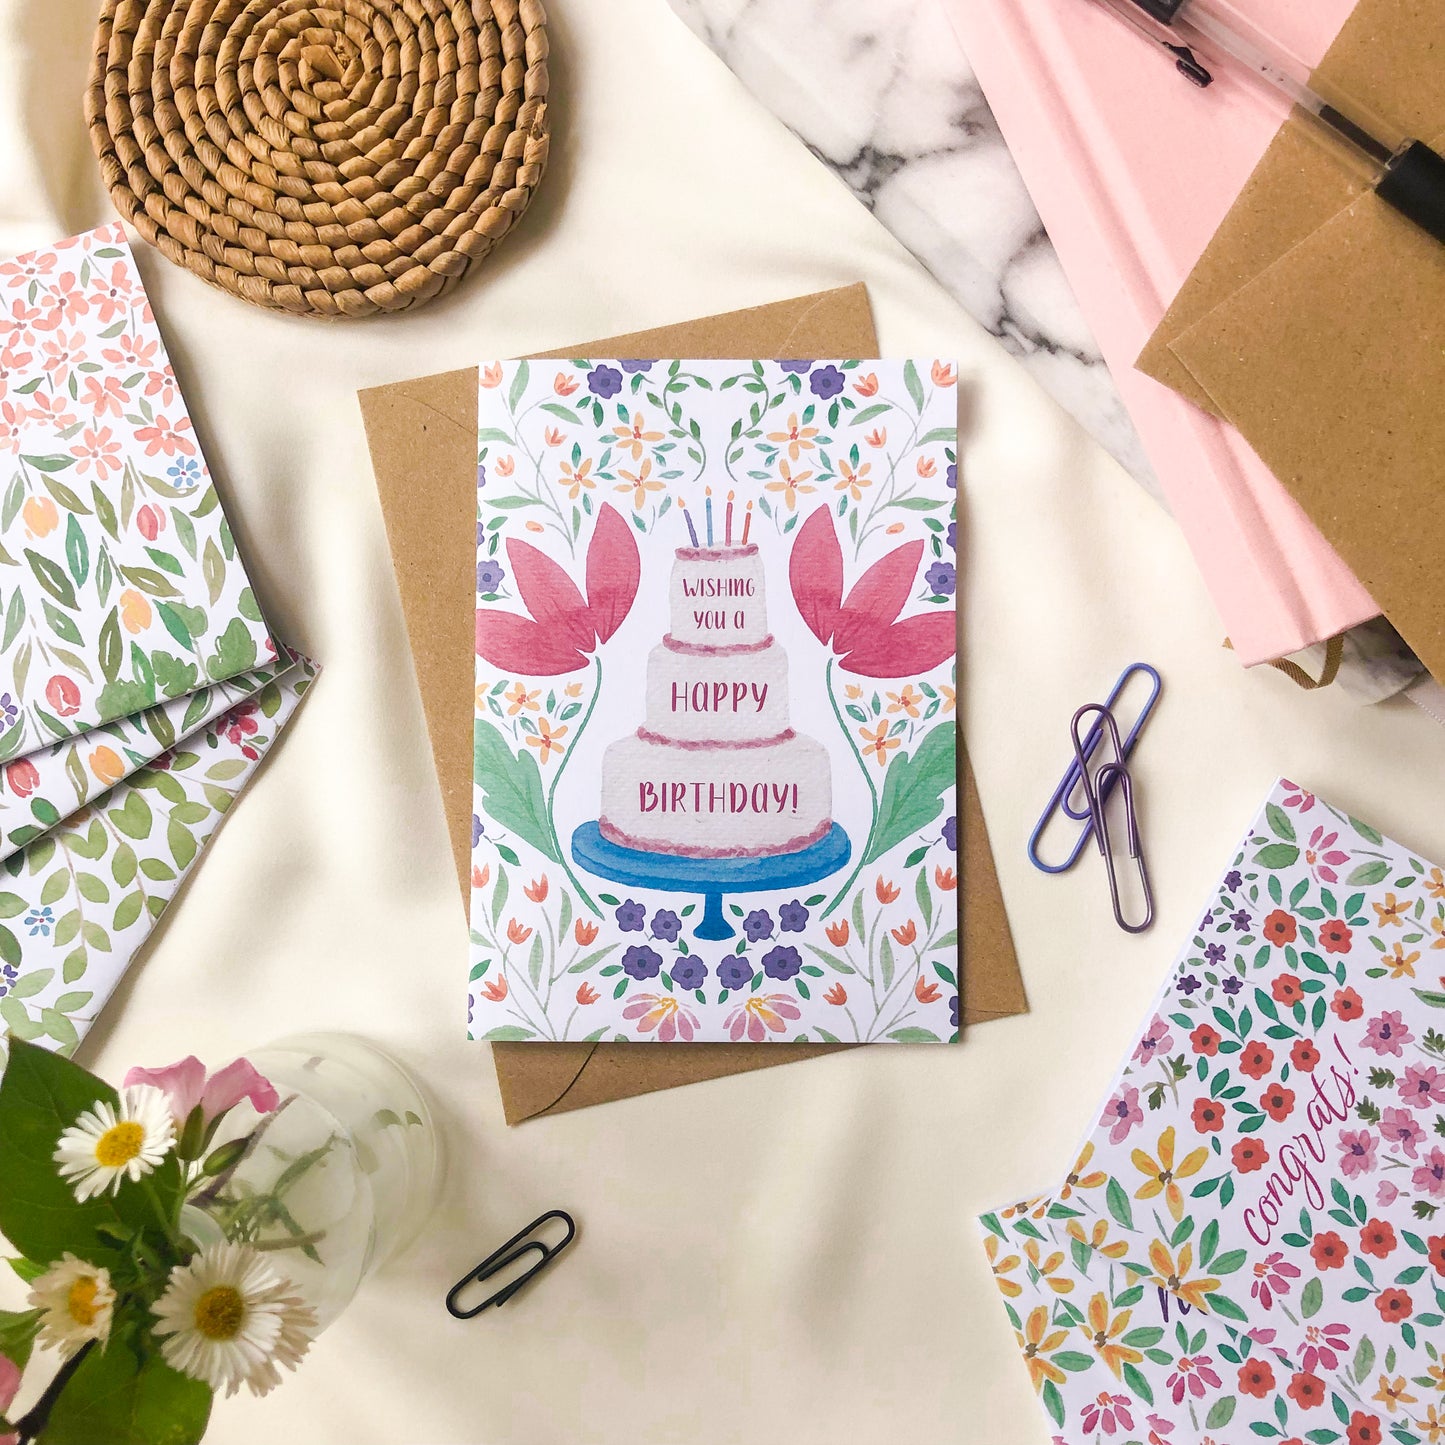 Pack of 3 Birthday Cards: Birthday Cake, Wishing You A Happy Birthday & Spring Flowers Happy Birthday